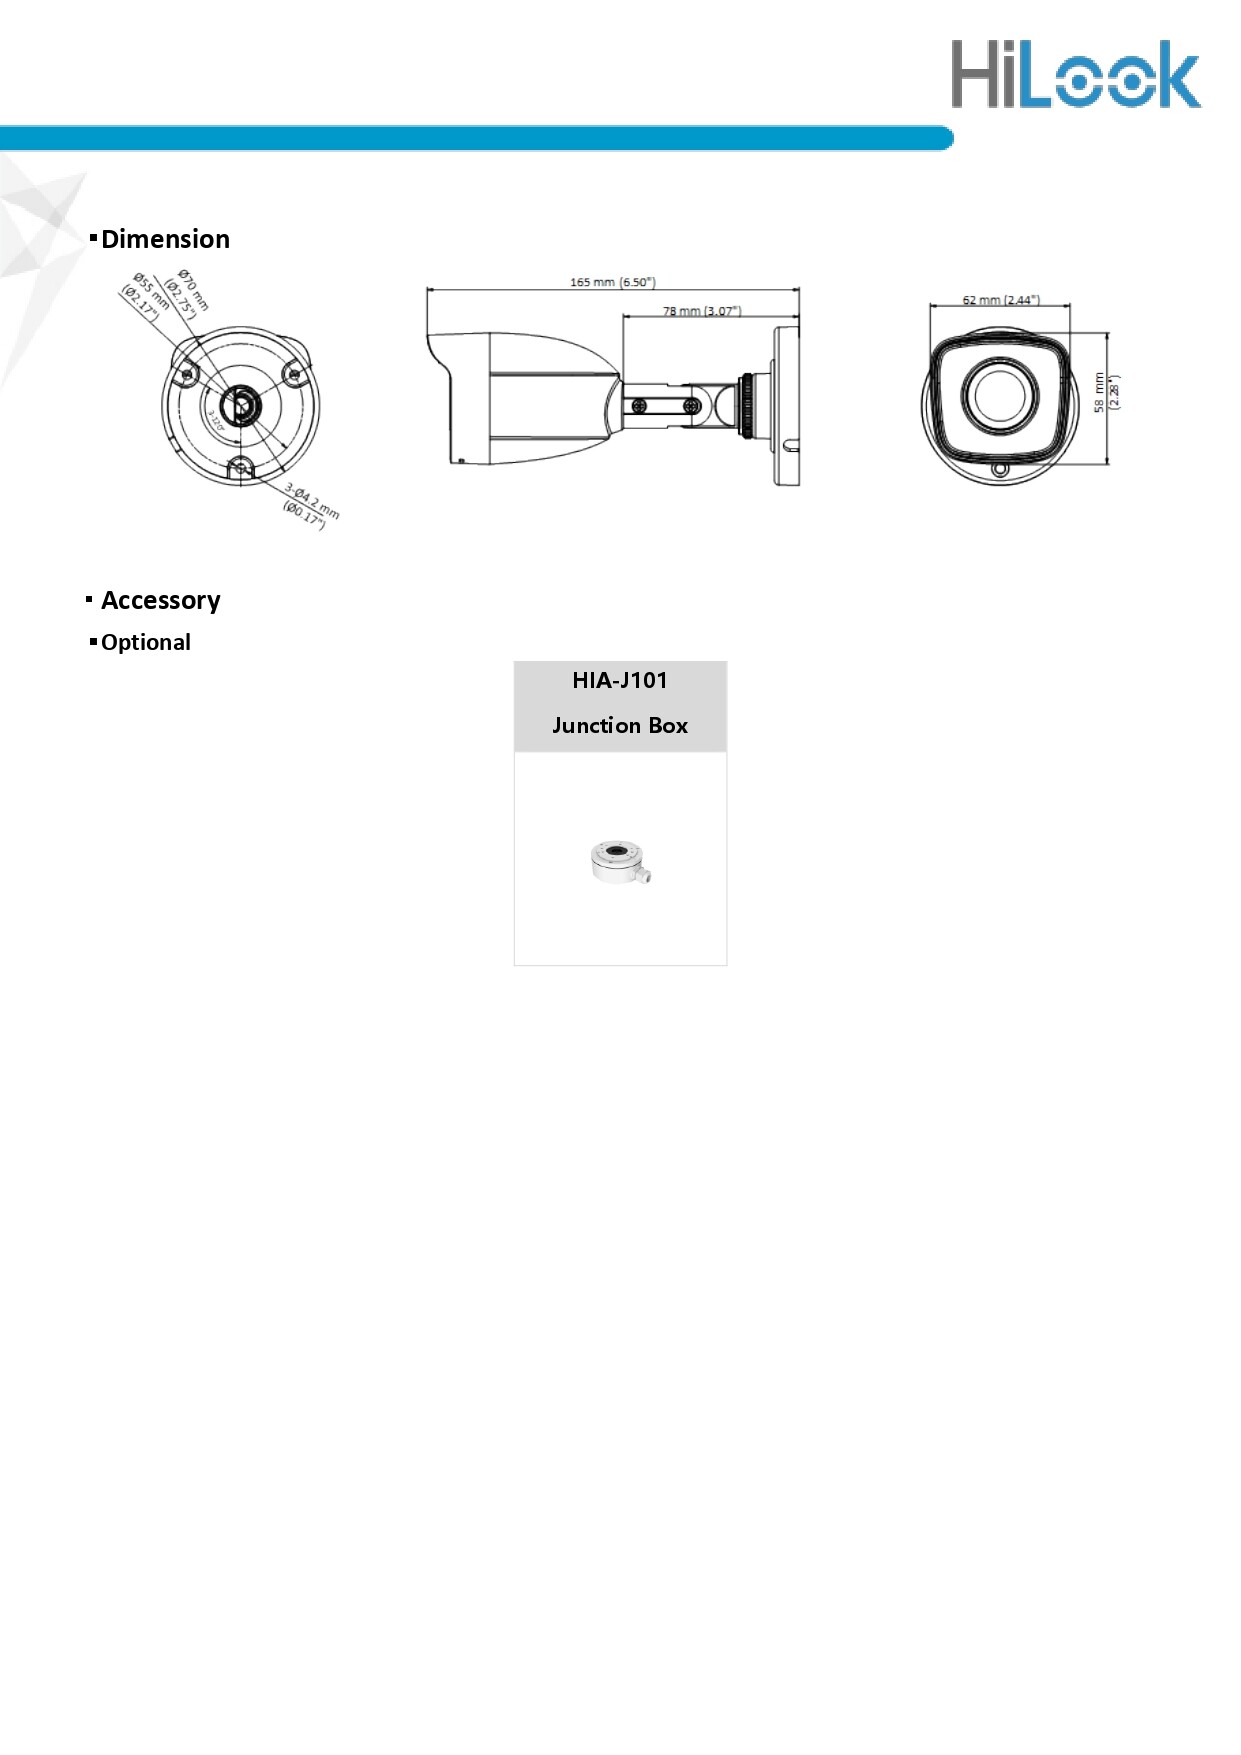 มุมมองเพิ่มเติมของสินค้า HILOOK กล้องวงจรปิด 2MP 4 ระบบ รุ่น THC-B120-C 3.6mm พร้อมอะแดปเตอร์ (ใช้ร่วมกับเครื่องบันทึกเท่านั้น) BY N.T Computer